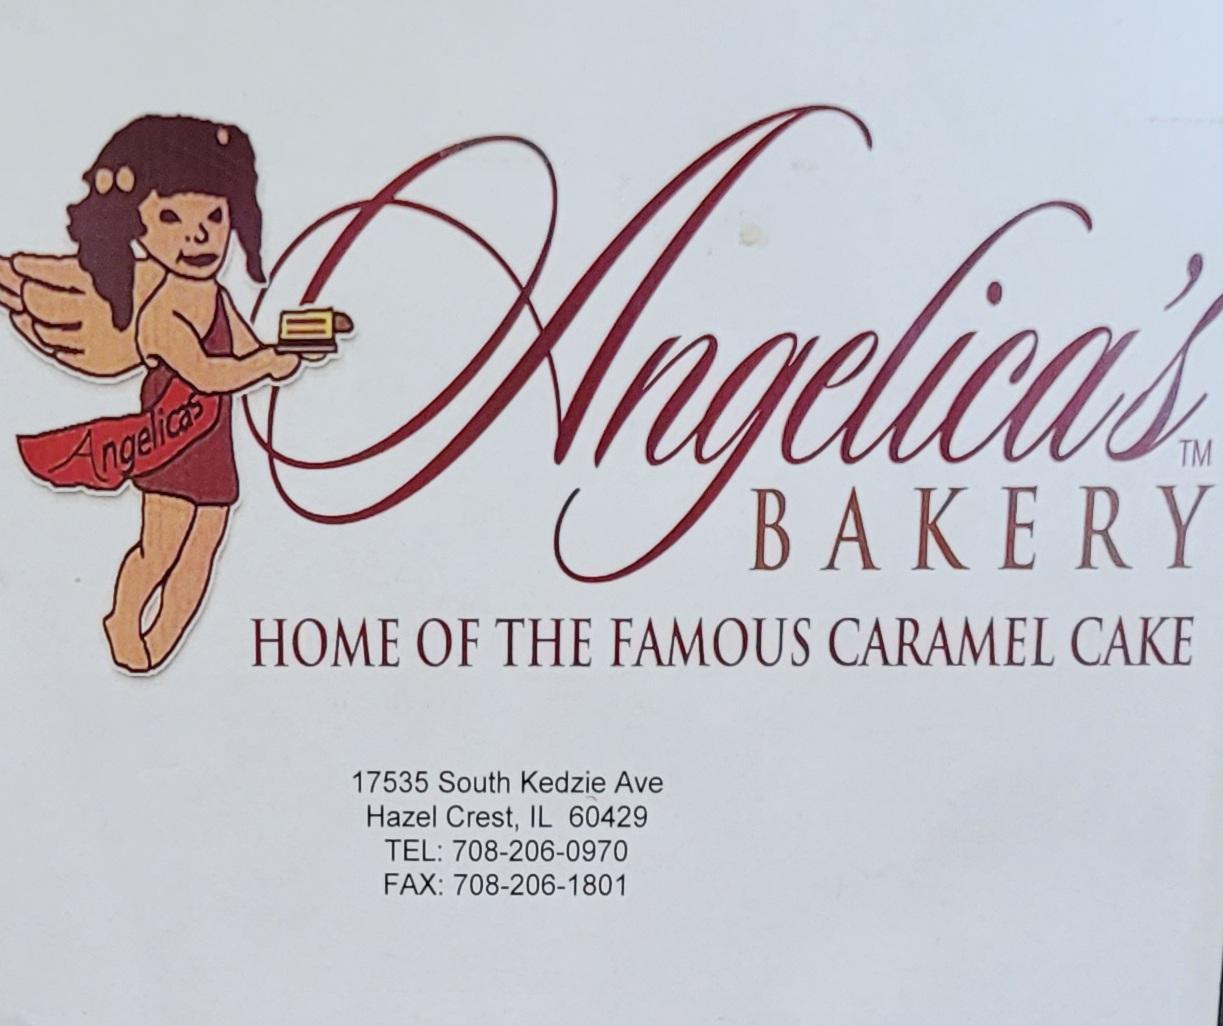 Angela's Cakes